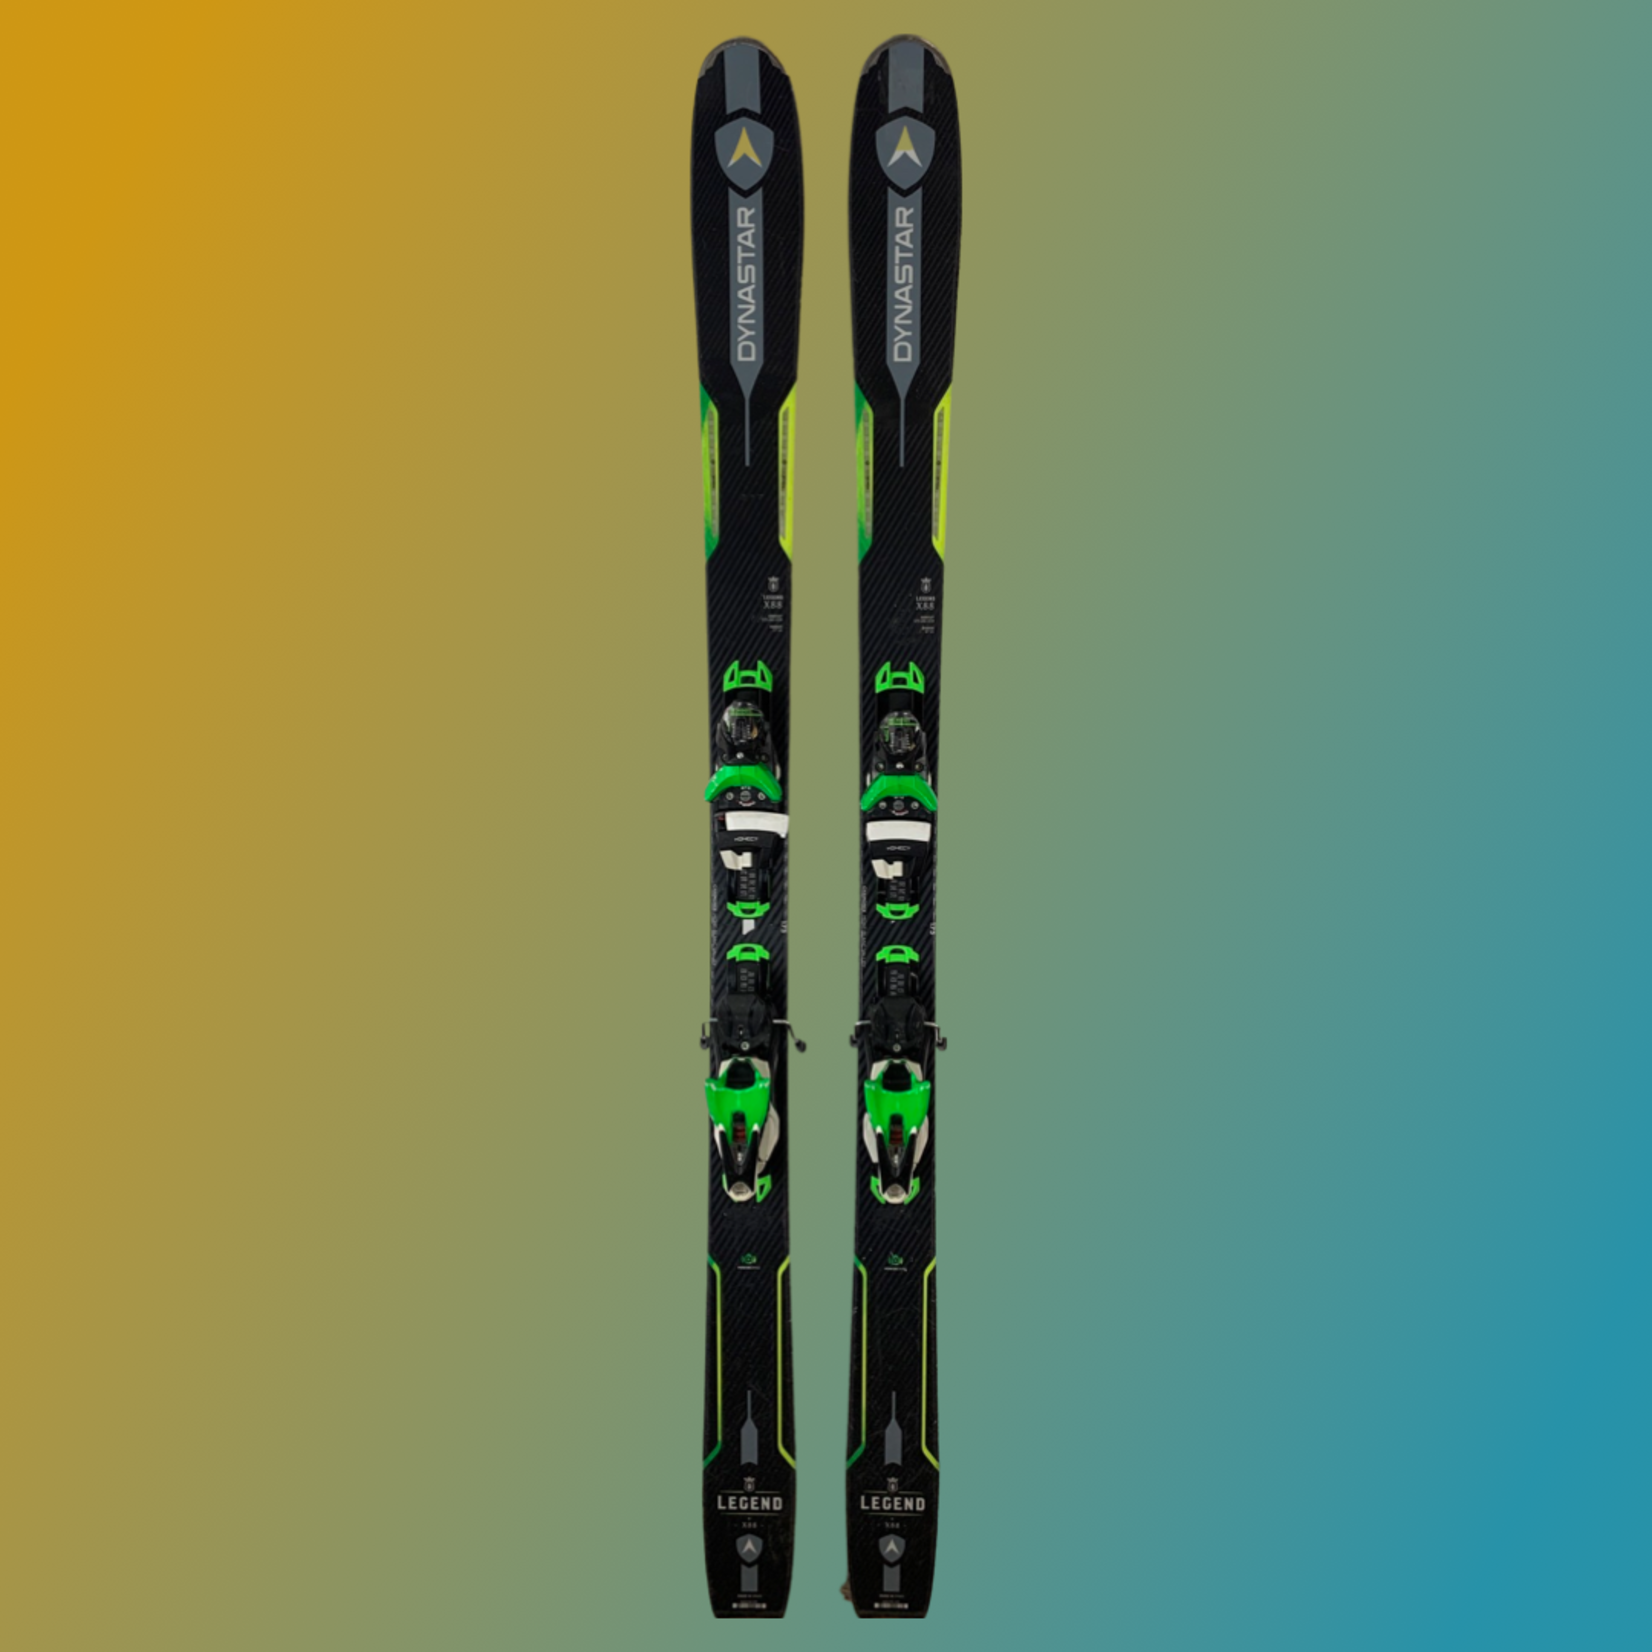 Dynastar 2019 Dynastar Legend X88 Skis, Size 186cm